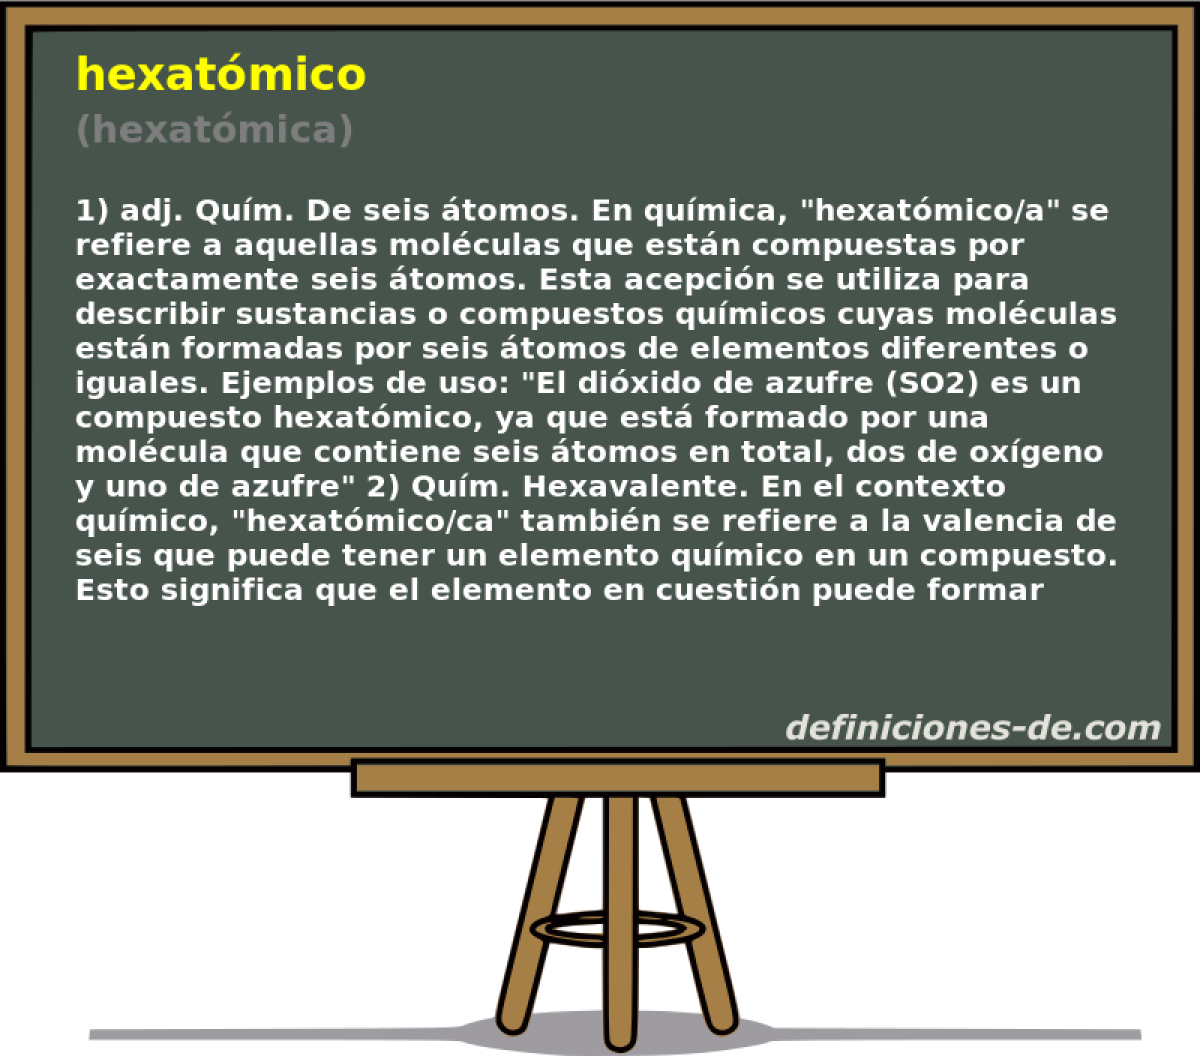 hexatmico (hexatmica)